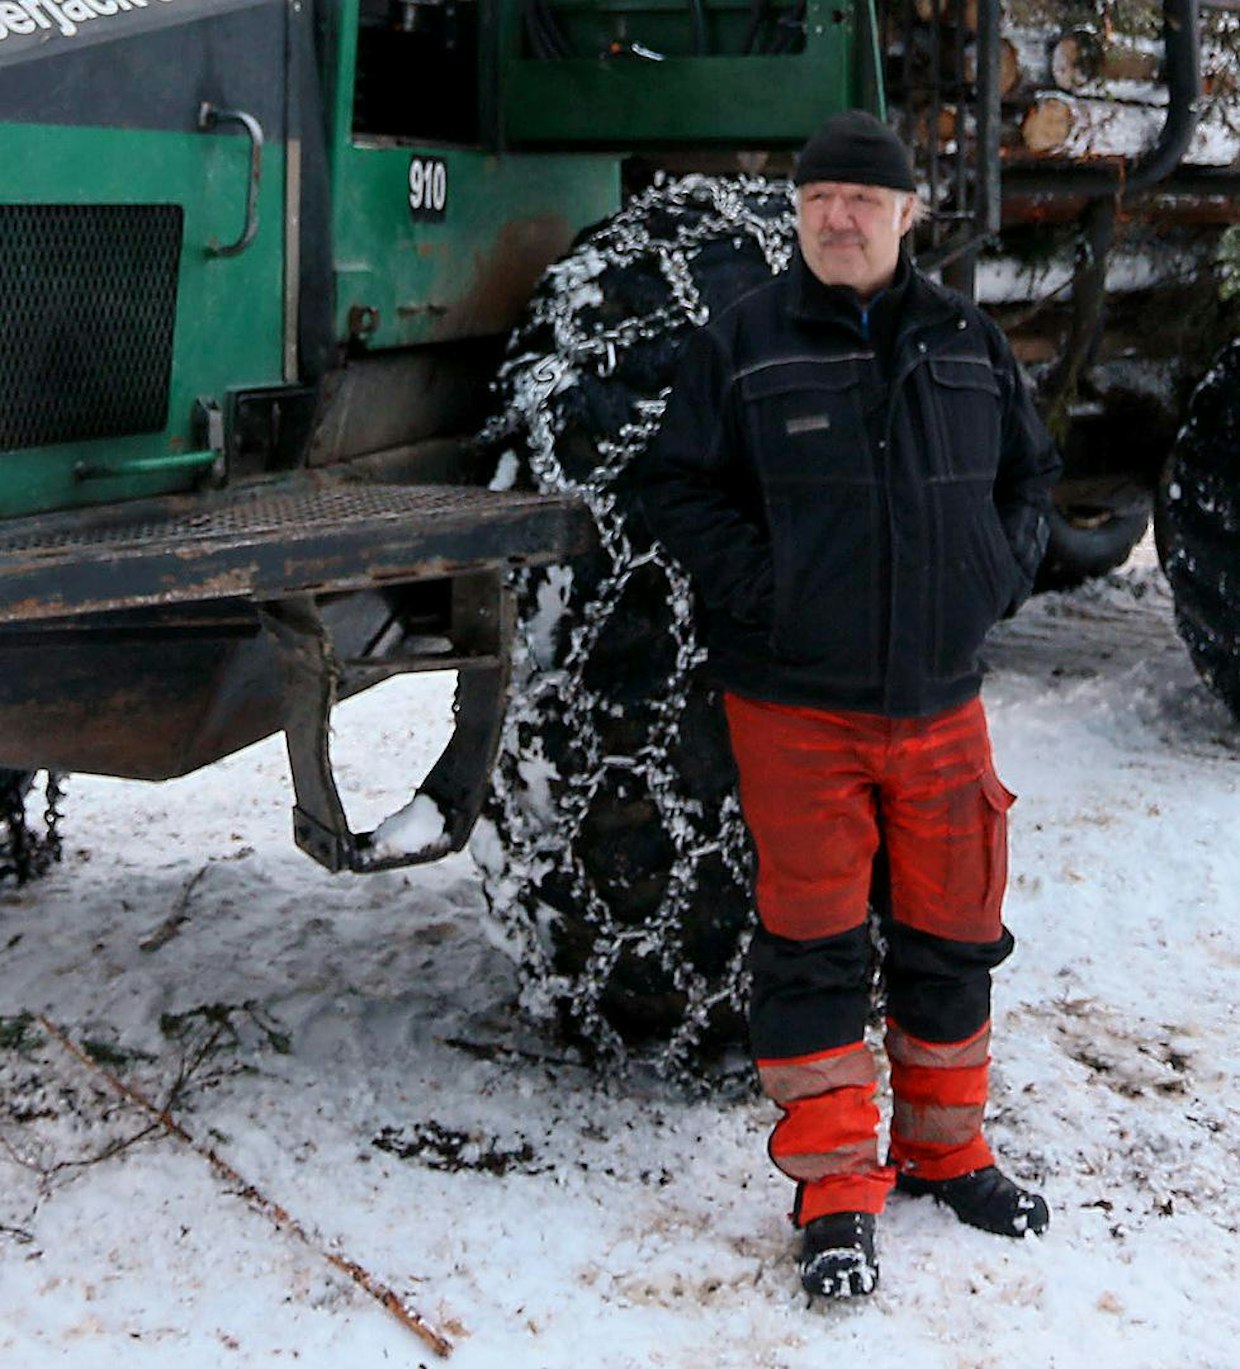 Ruoveden Jäminkipohjassa asuvalle Matti Tervaselle on jo pitkään ollut hyvin selvää, että ajokkina pitää olla Lokomo. Volvon 462 -mallin jälkeen on hankittu useita lokomosukuisia koneita, ja harvasta niistä on luovuttu. Nyt aktiivikäytössä on 910:n lisäksi myös samaan kaavaan perustuva Timberjack 1010B.